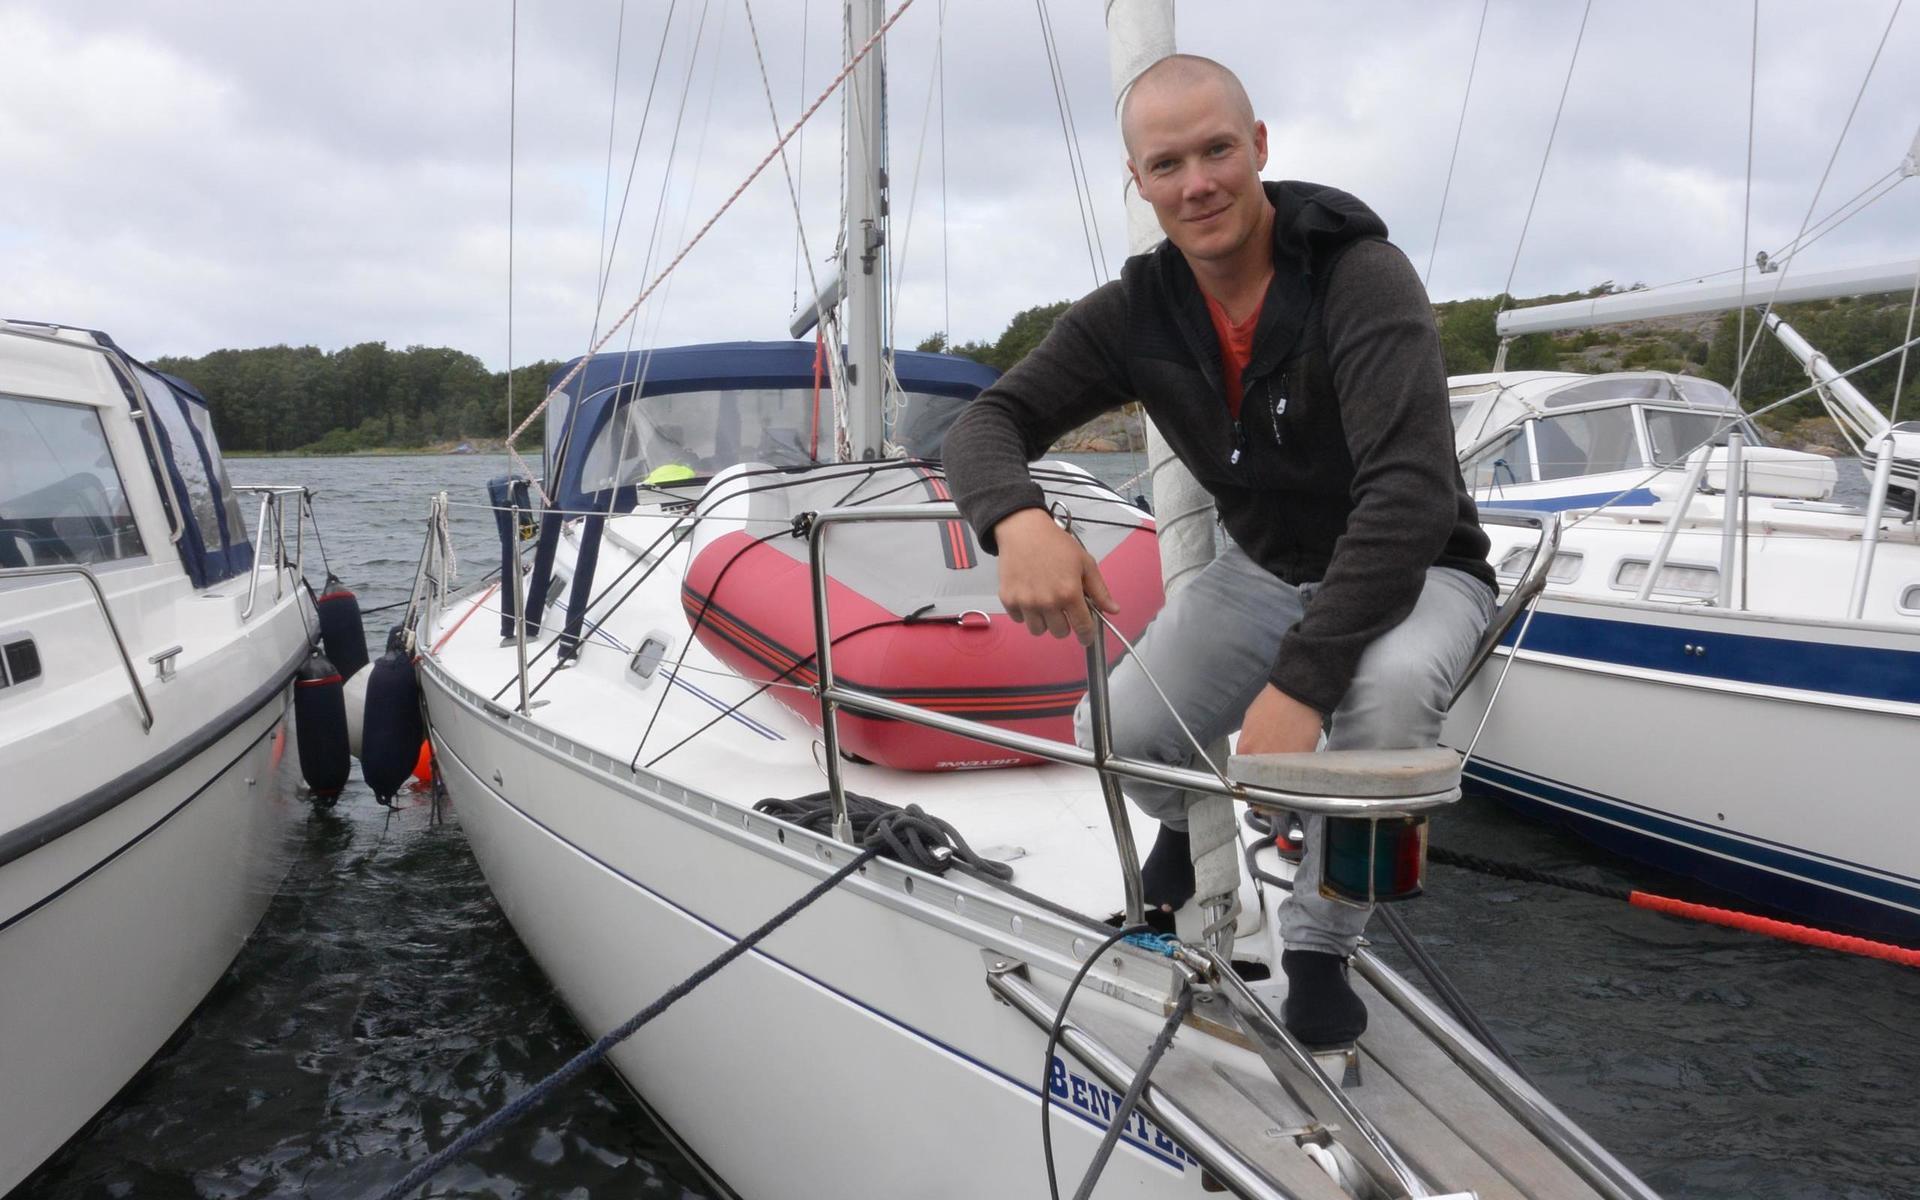 Mattias Rutström från Wallhamn fick till slut tillkalla sjöräddningen för att få hjälp med att lägga ut ankare  Bojarna för akterförtöjningarna klarade inte trycket i den västliga vinden utan draggade.